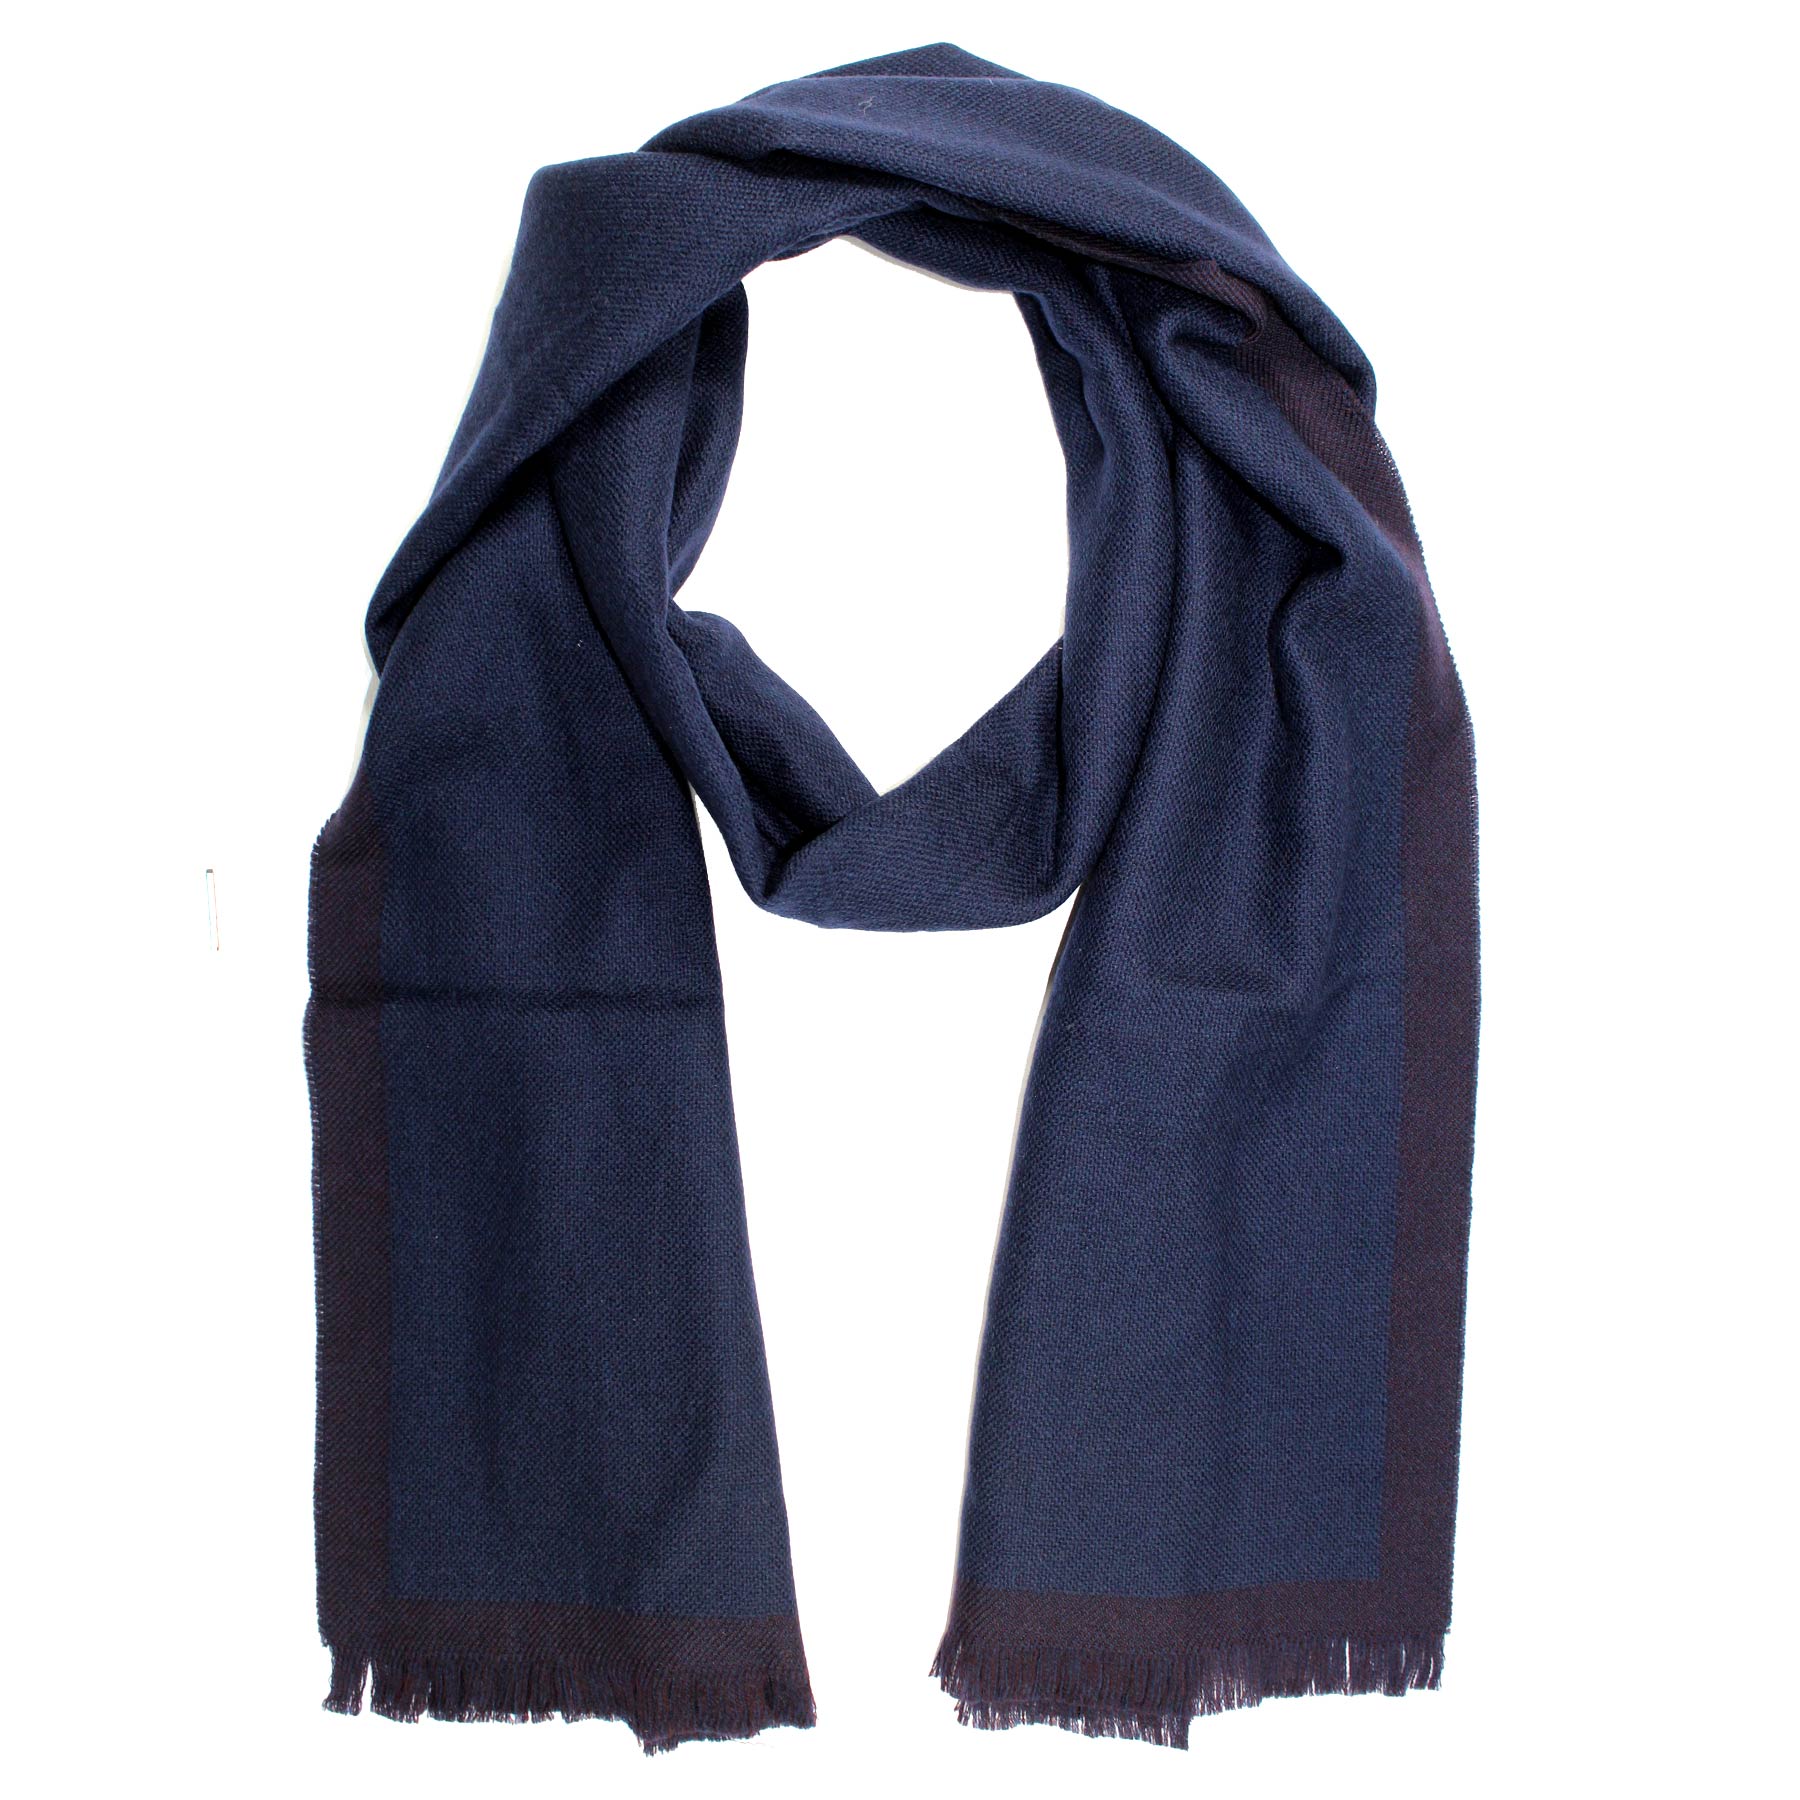 Agnona Scarf Dark Blue Design - Luxury Wool Shawl FINAL SALE